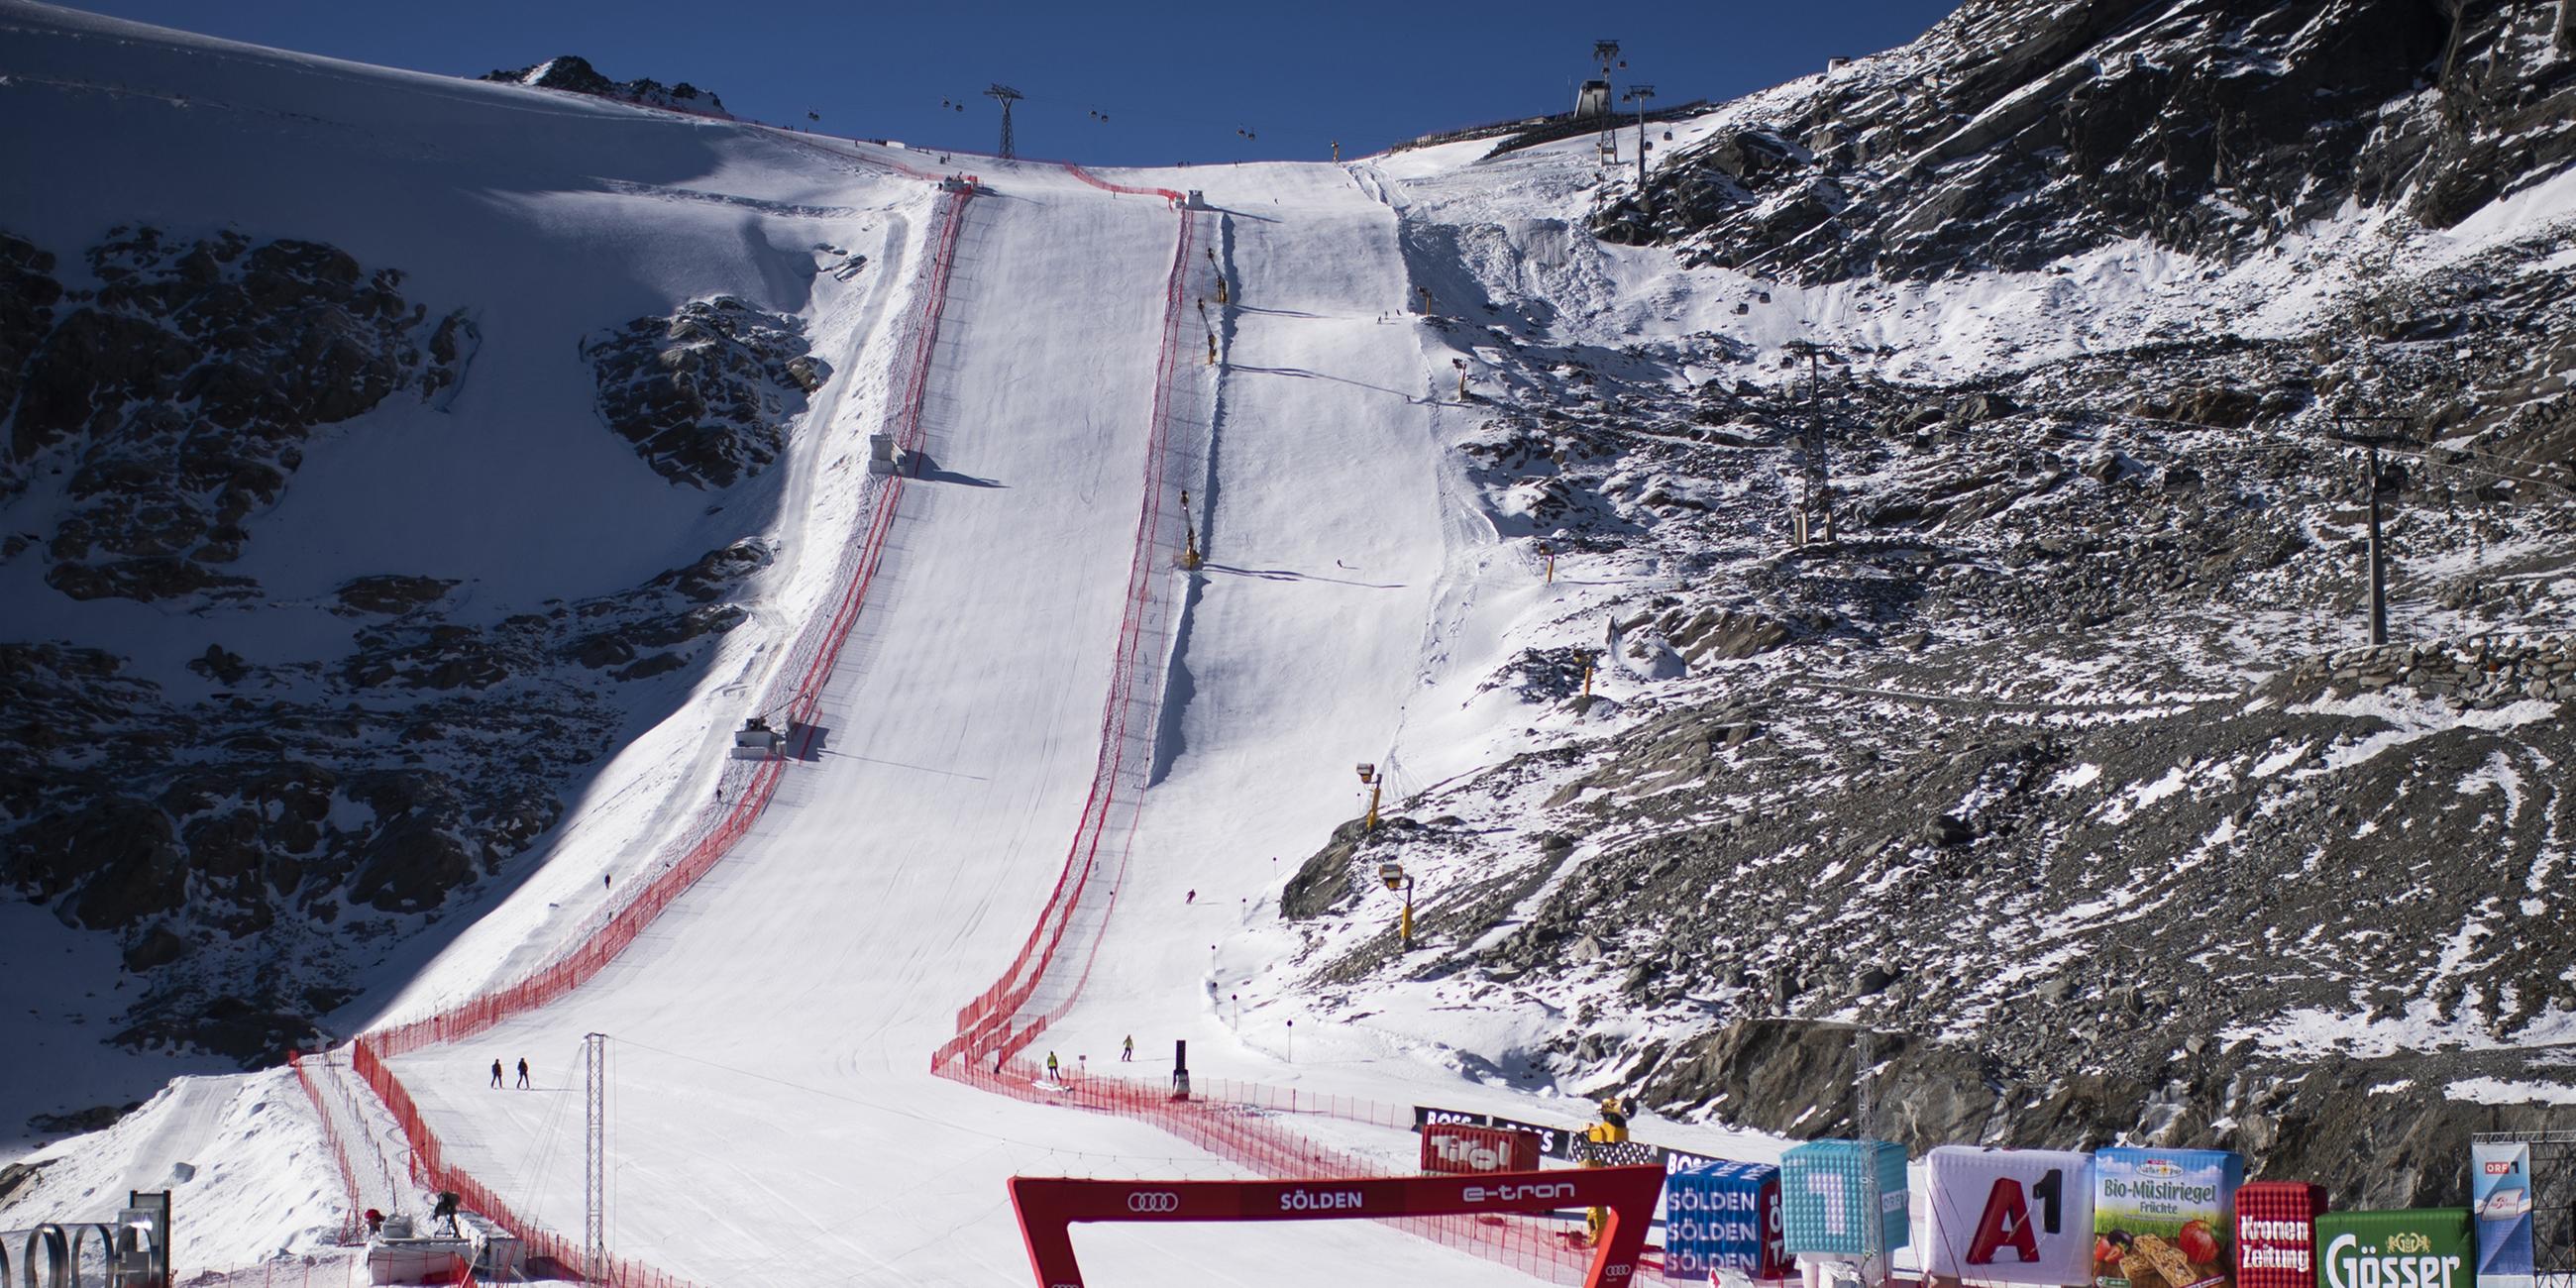 Archiv: Das Zielgelände vor der FIS Alpine Ski World Cup Saison in Sölden, Österreich, am 22. 10. 2021